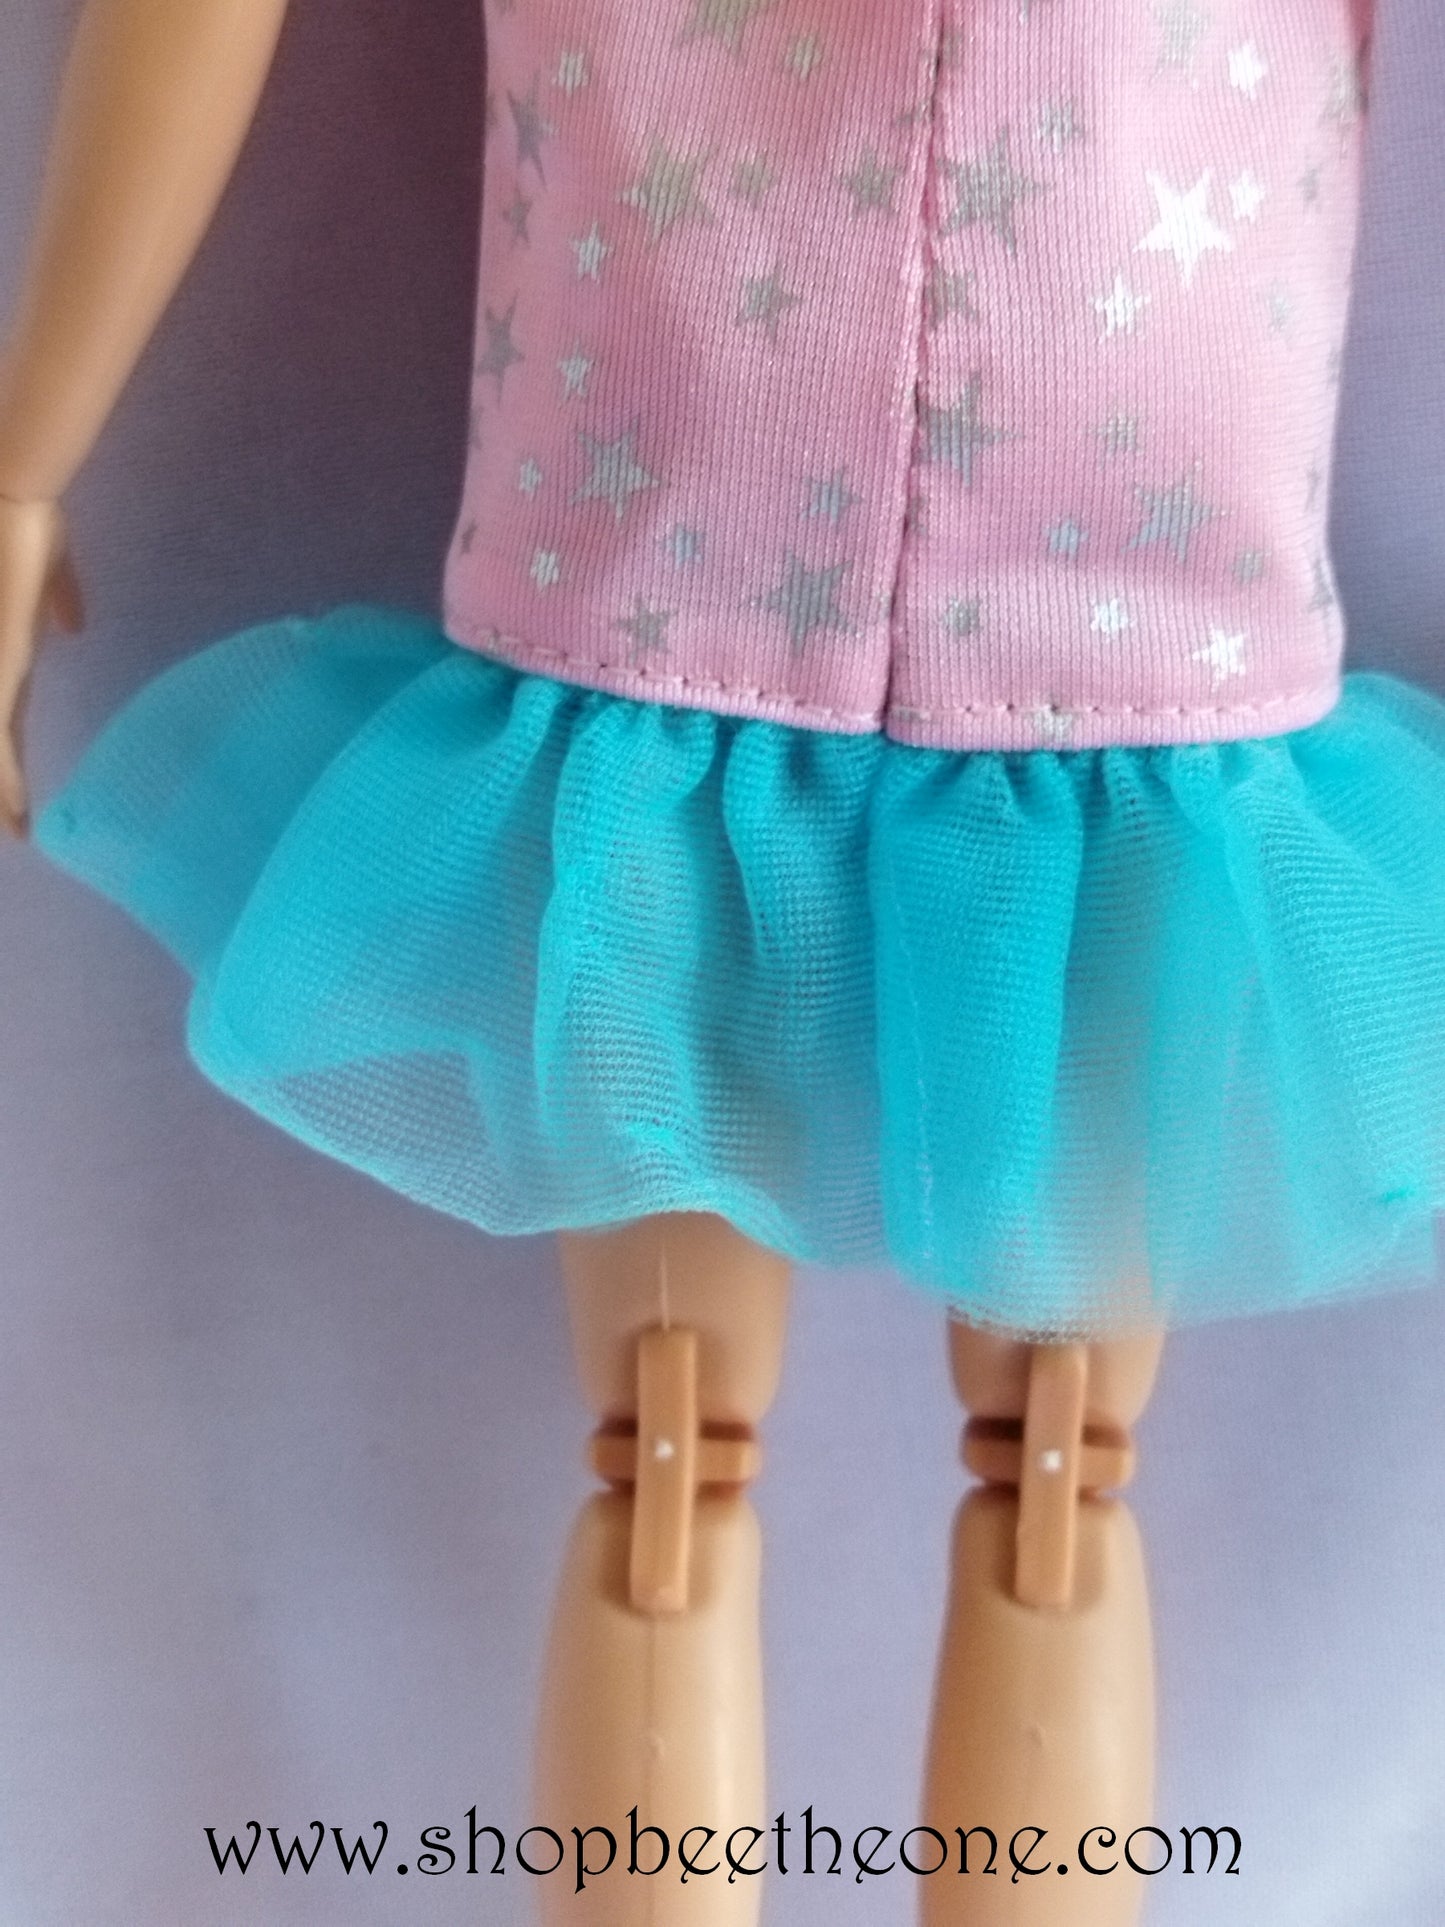 Calendrier Barbie 15 mois Année 1991 - exclusivité usa - Mattel 1990 - Vêtement